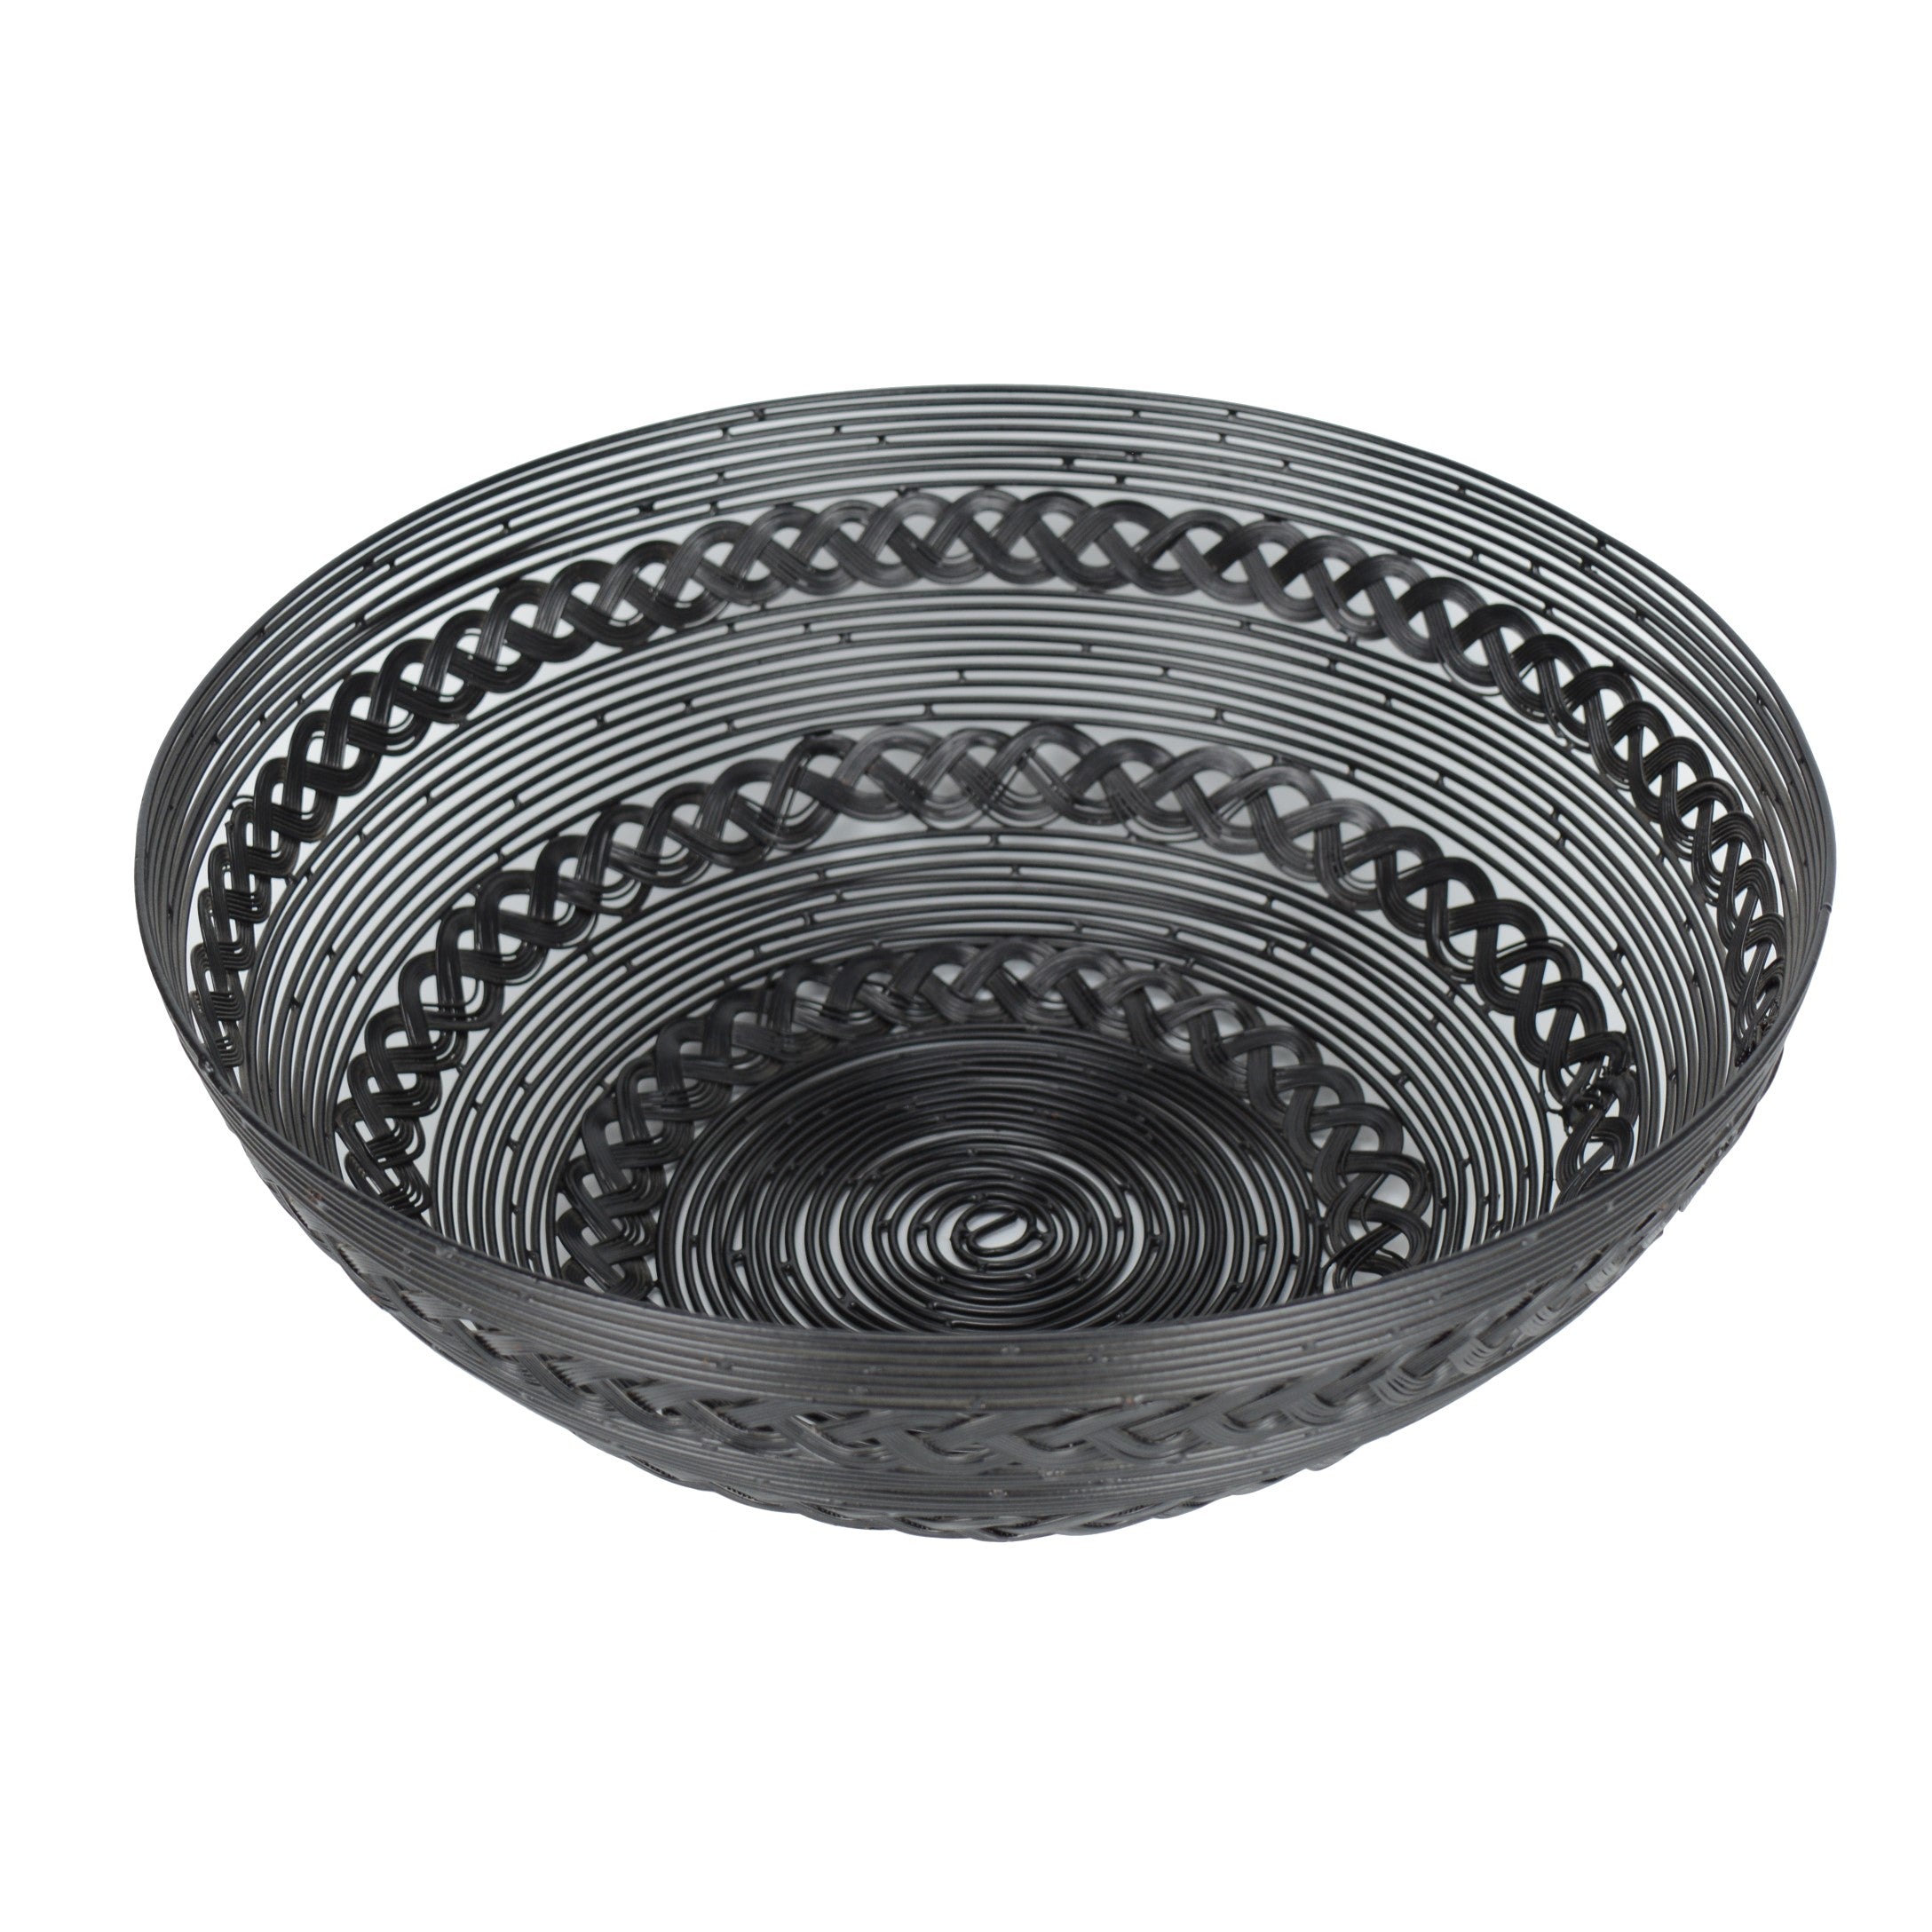 Hand Woven Black Multipurpose Basket/Bowl